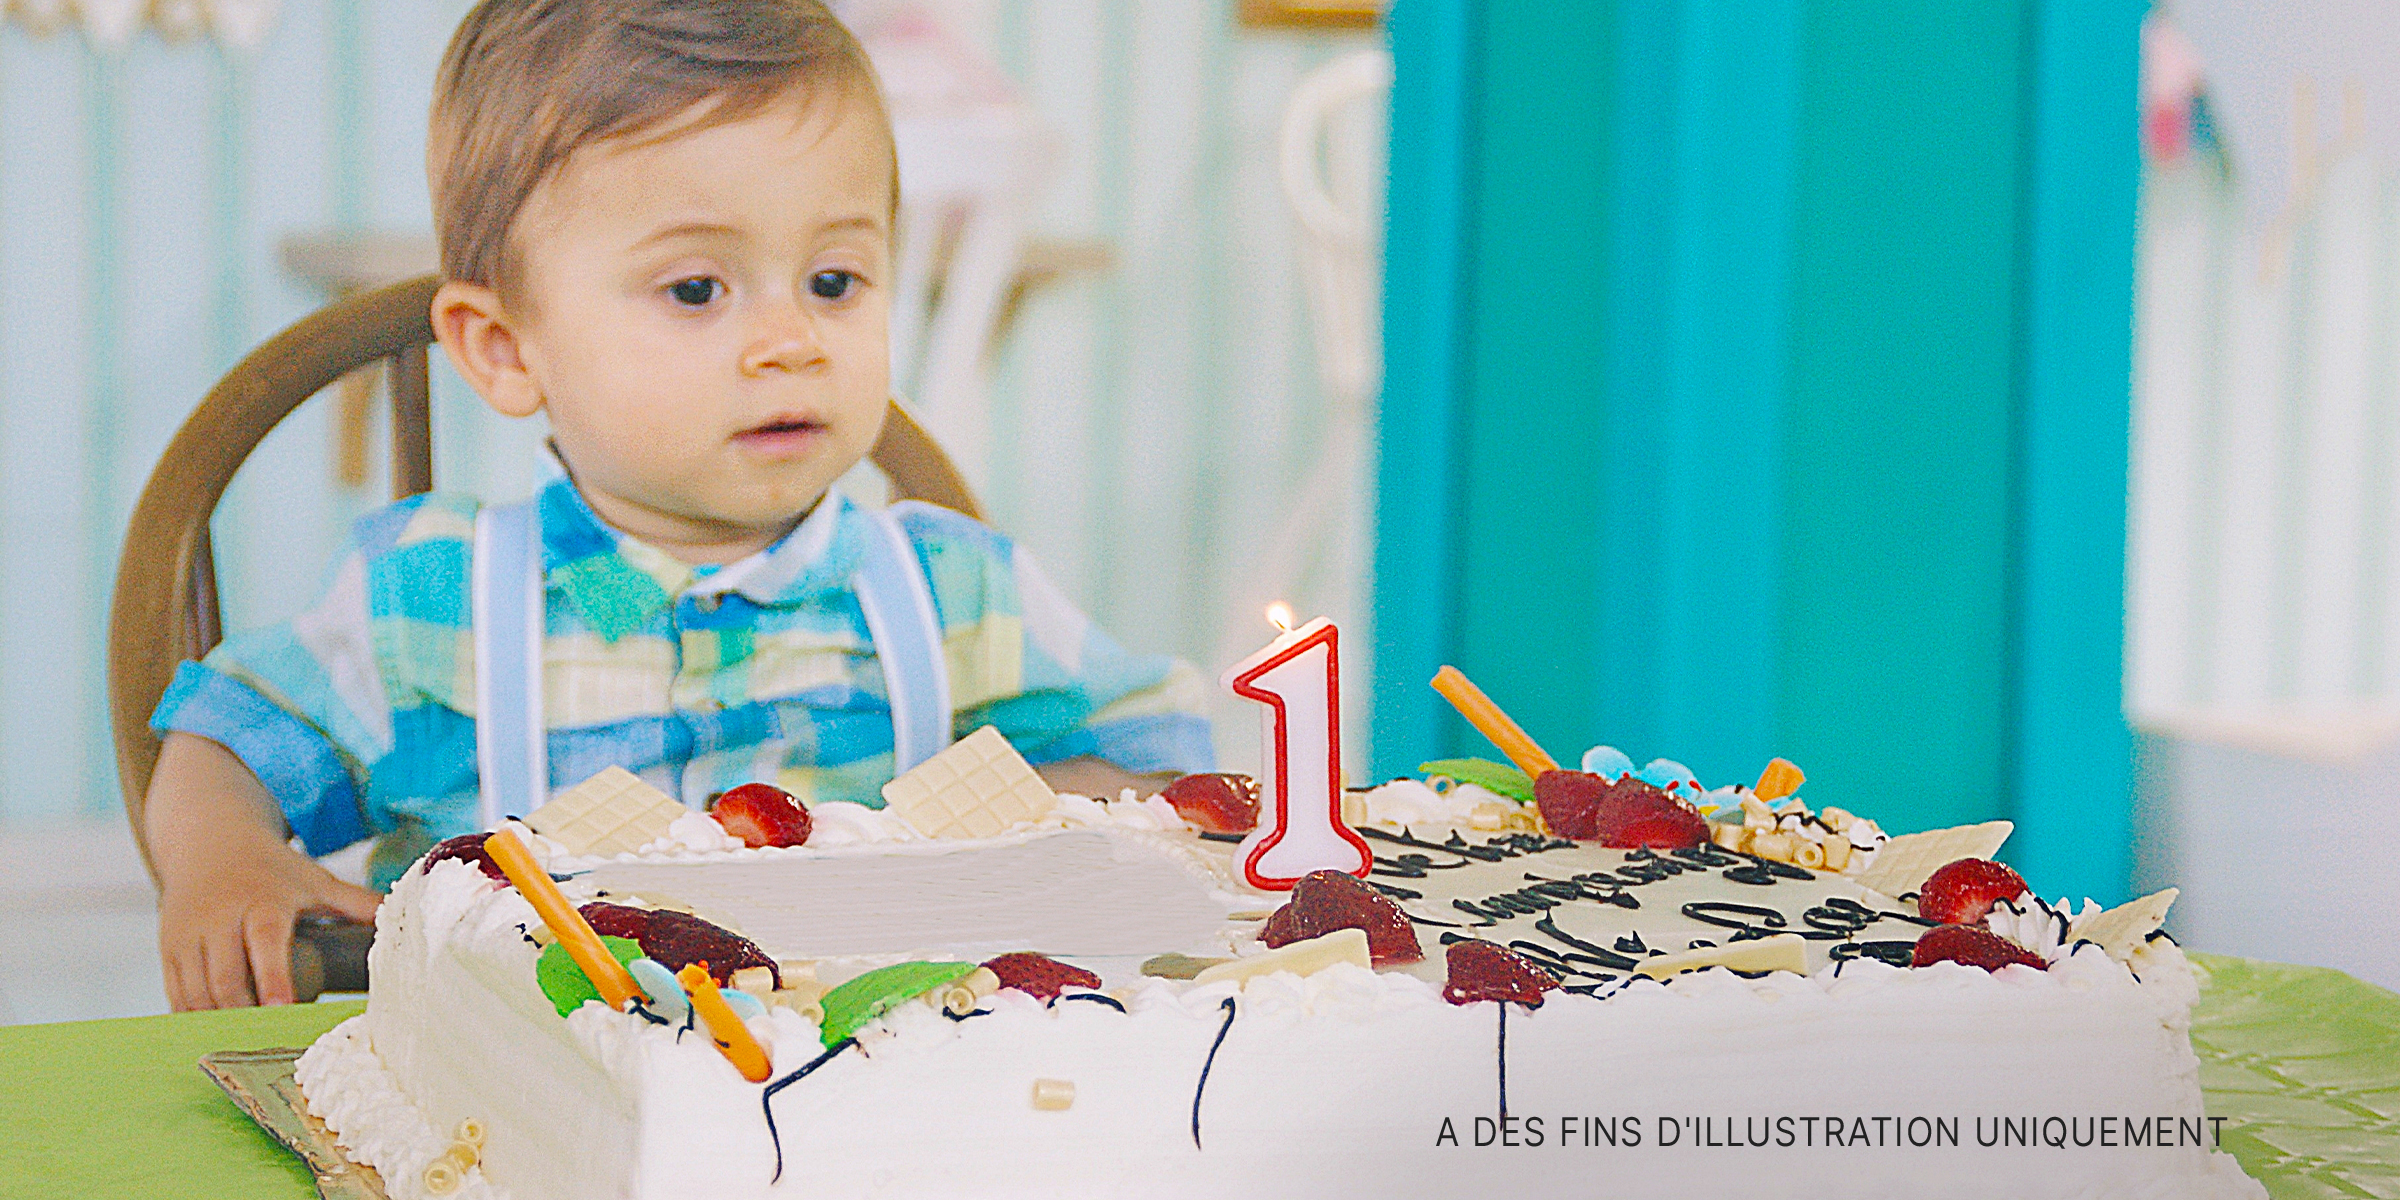 Un enfant en bas âge assis à une table, prêt à souffler une bougie sur son gâteau d'anniversaire | Source : Getty Images